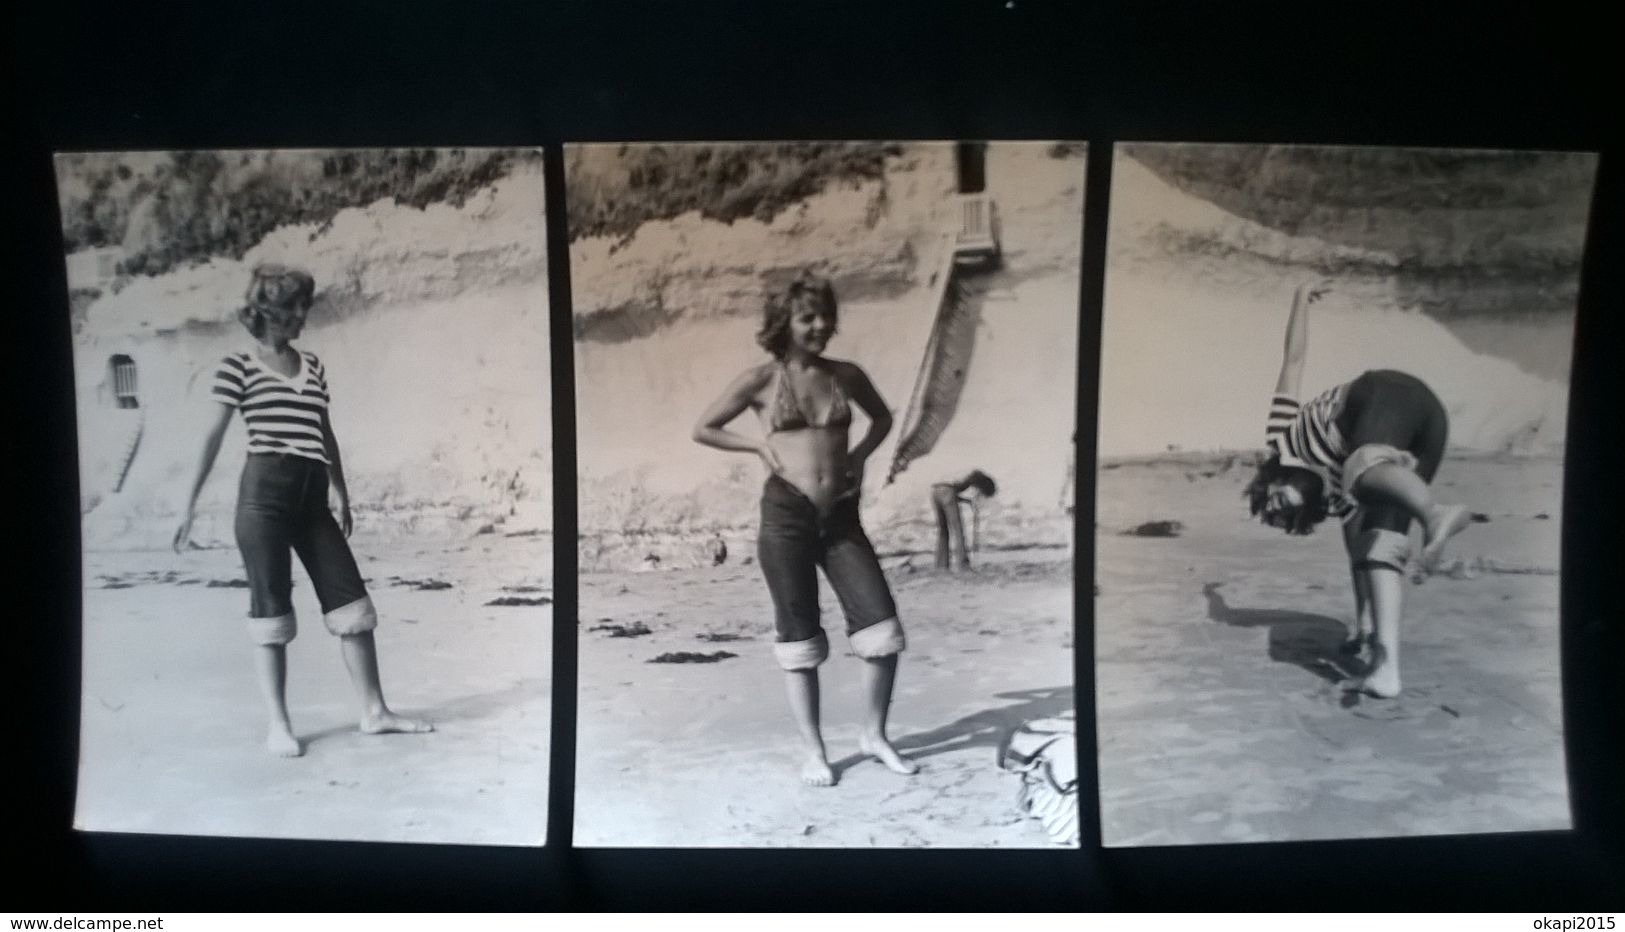 120 PHOTOS SÉVILLE SACRO - MONTE ESPAGNE LOURDES FRANCE BELGIQUE ... PHOTOS DE PLUSIEURS ALBUMS . ANNÉES 1950 à 1970 - Albums & Collections